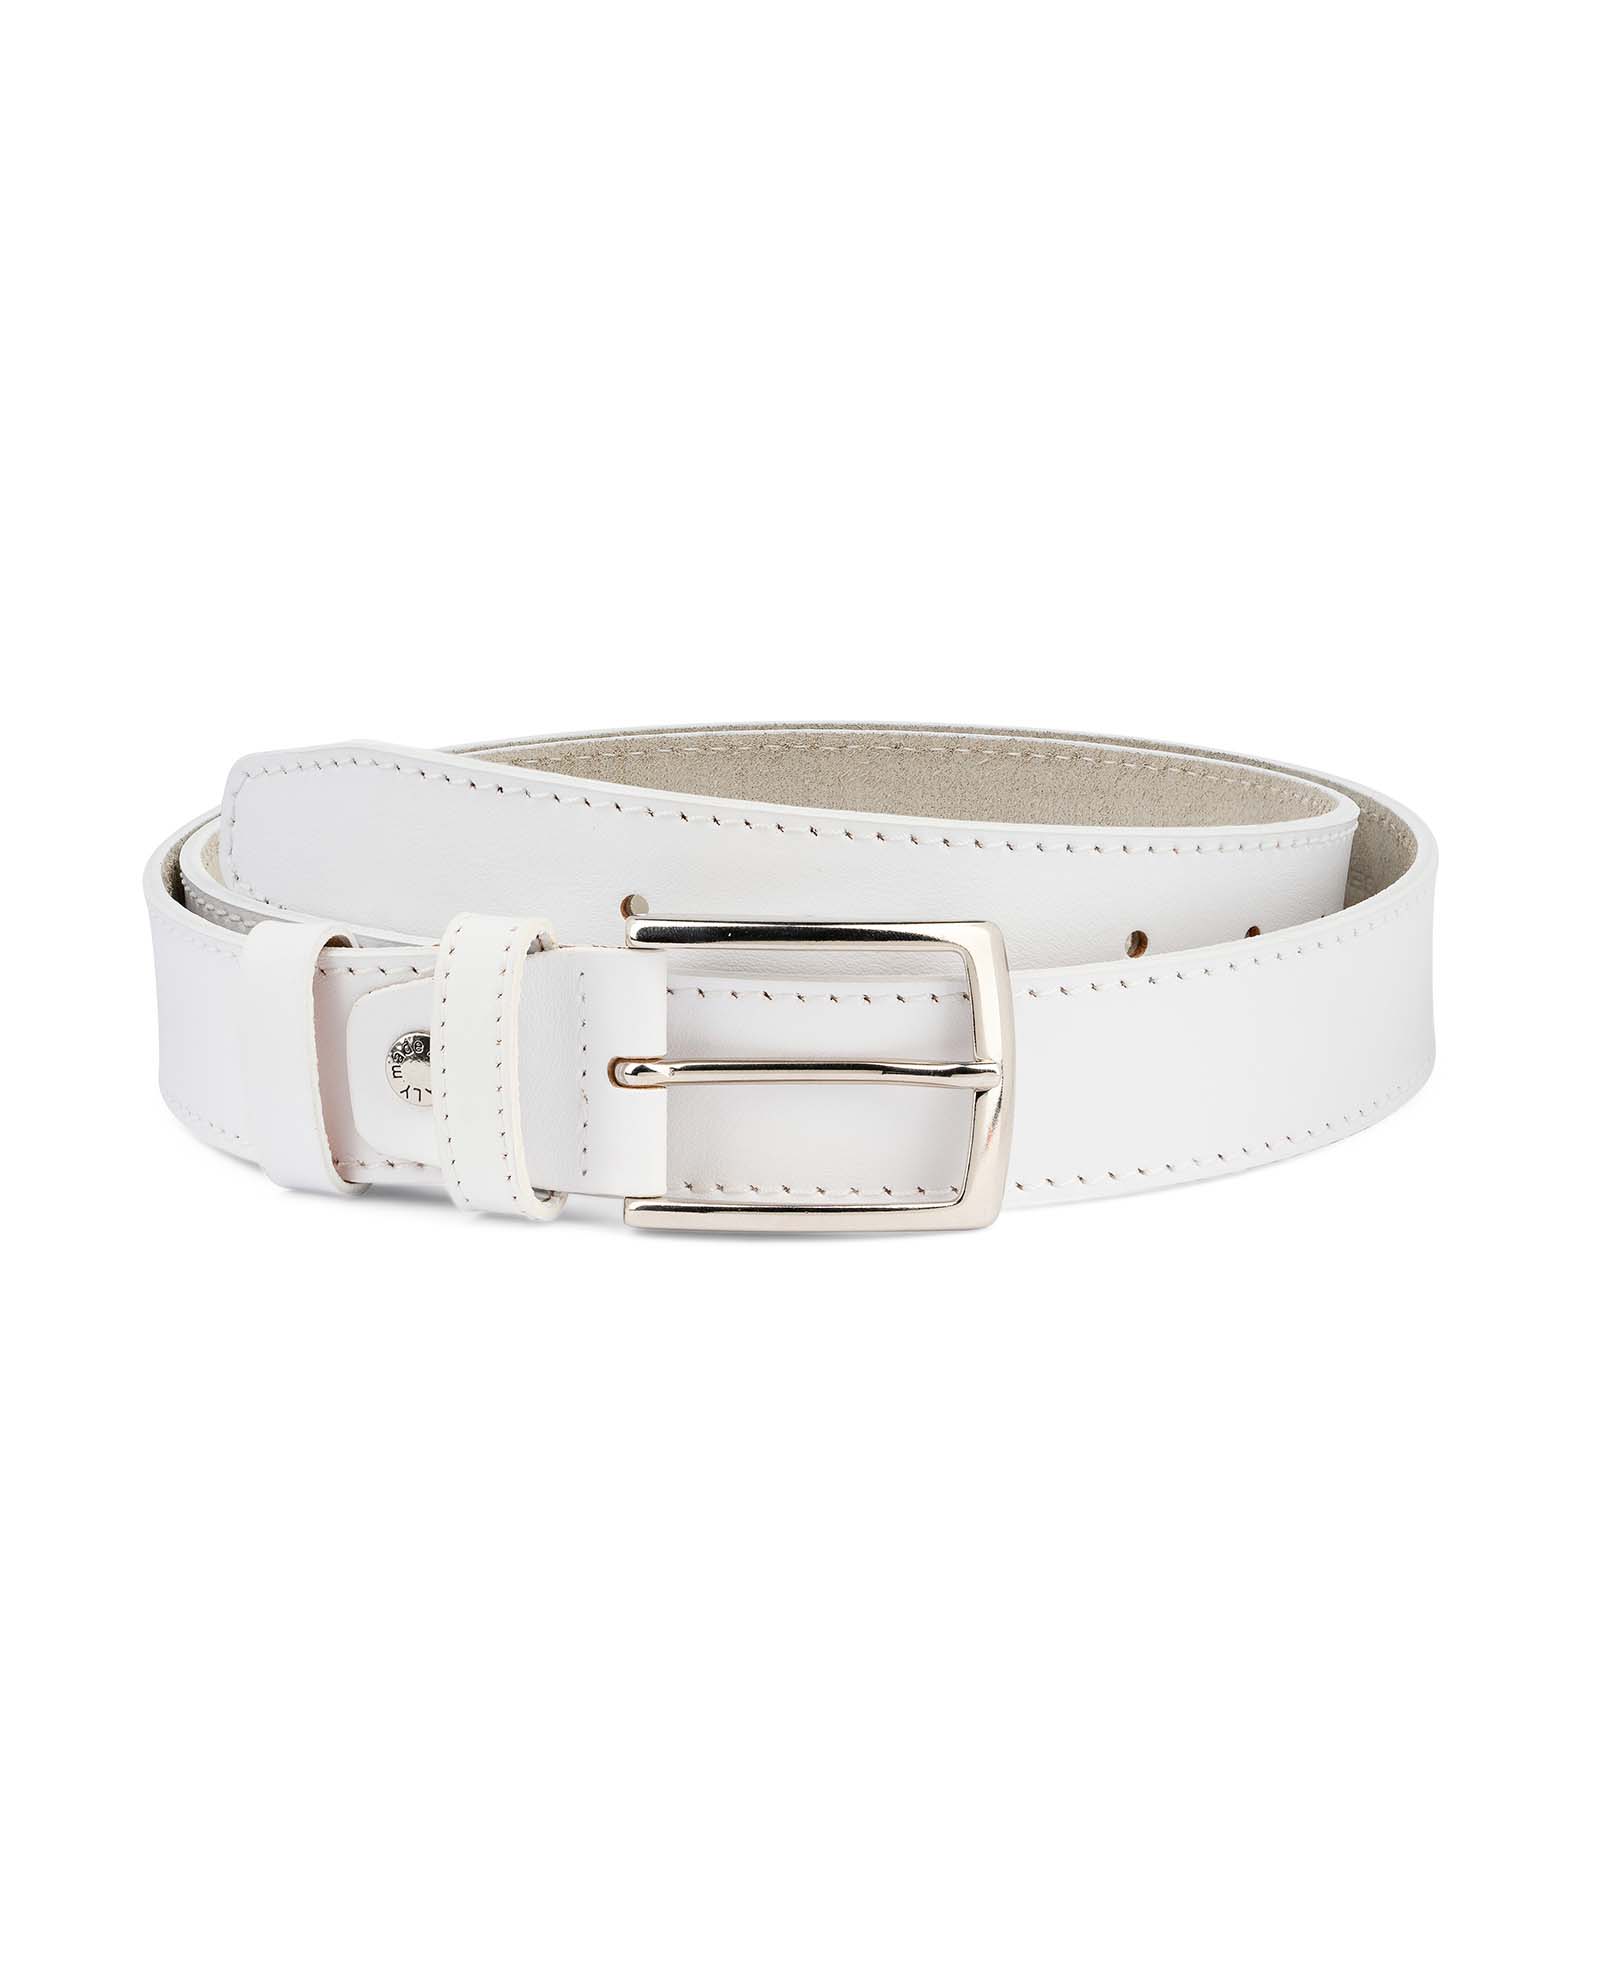 Buy Men's White Belt | Genuine Leather | LeatherBeltsOnline.com